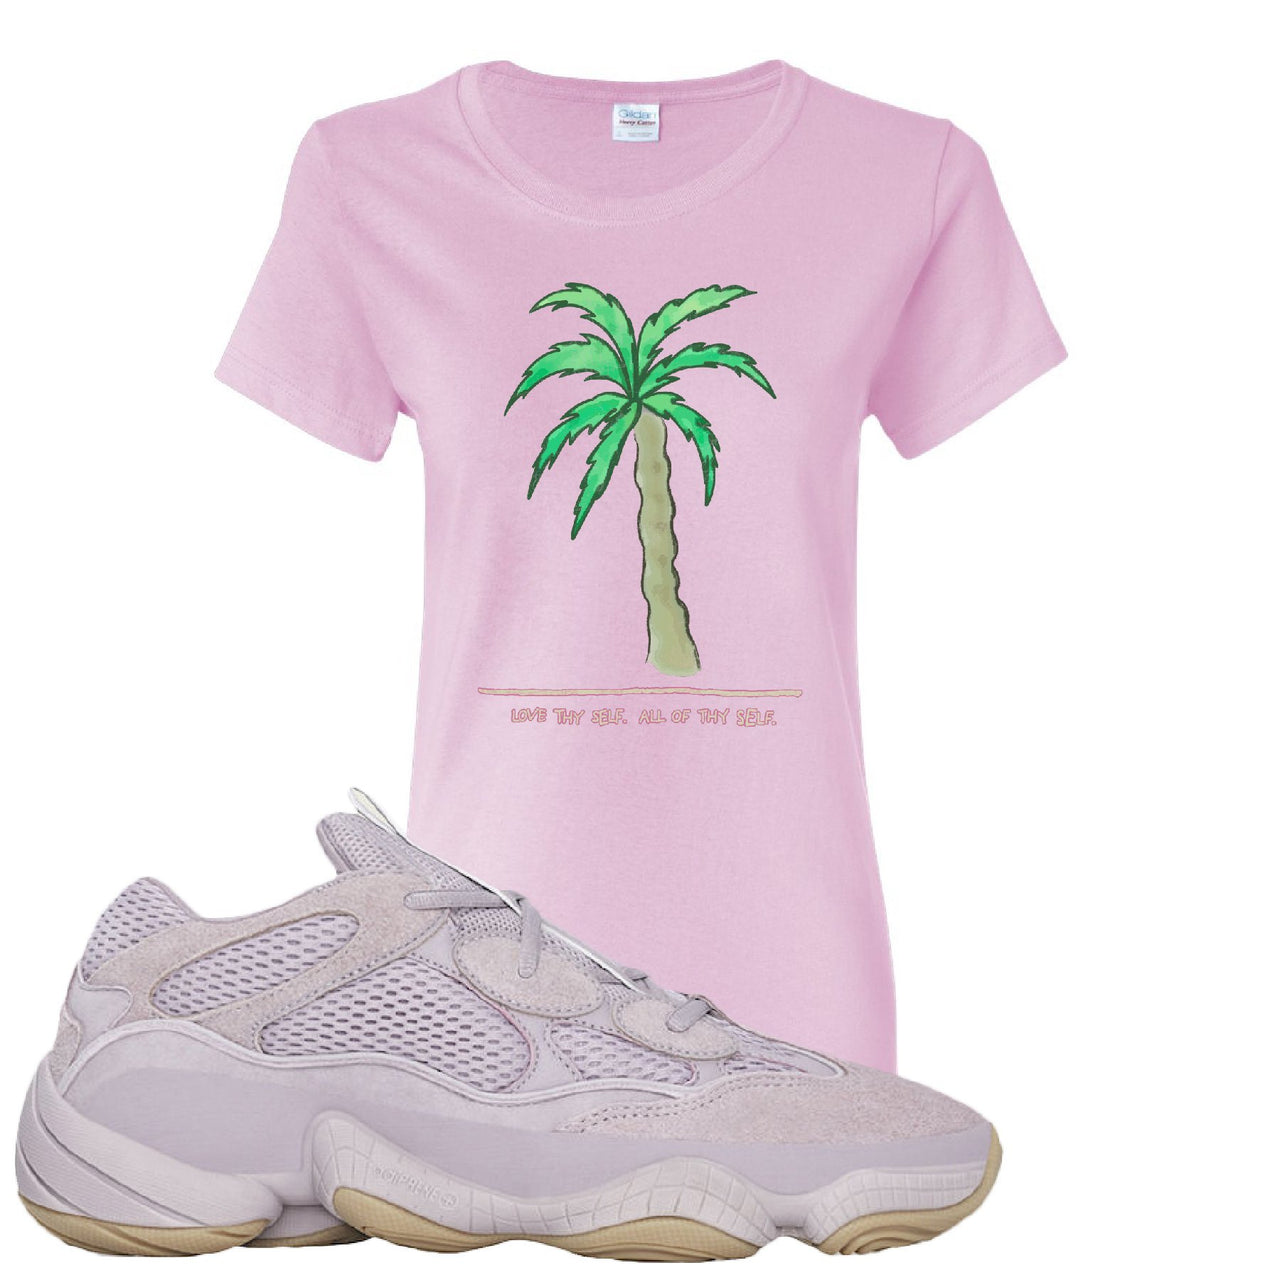 Yeezy 500 Soft Vision Love Thyself Palm Light Pink Sneaker Hook Up Women's T-Shirt